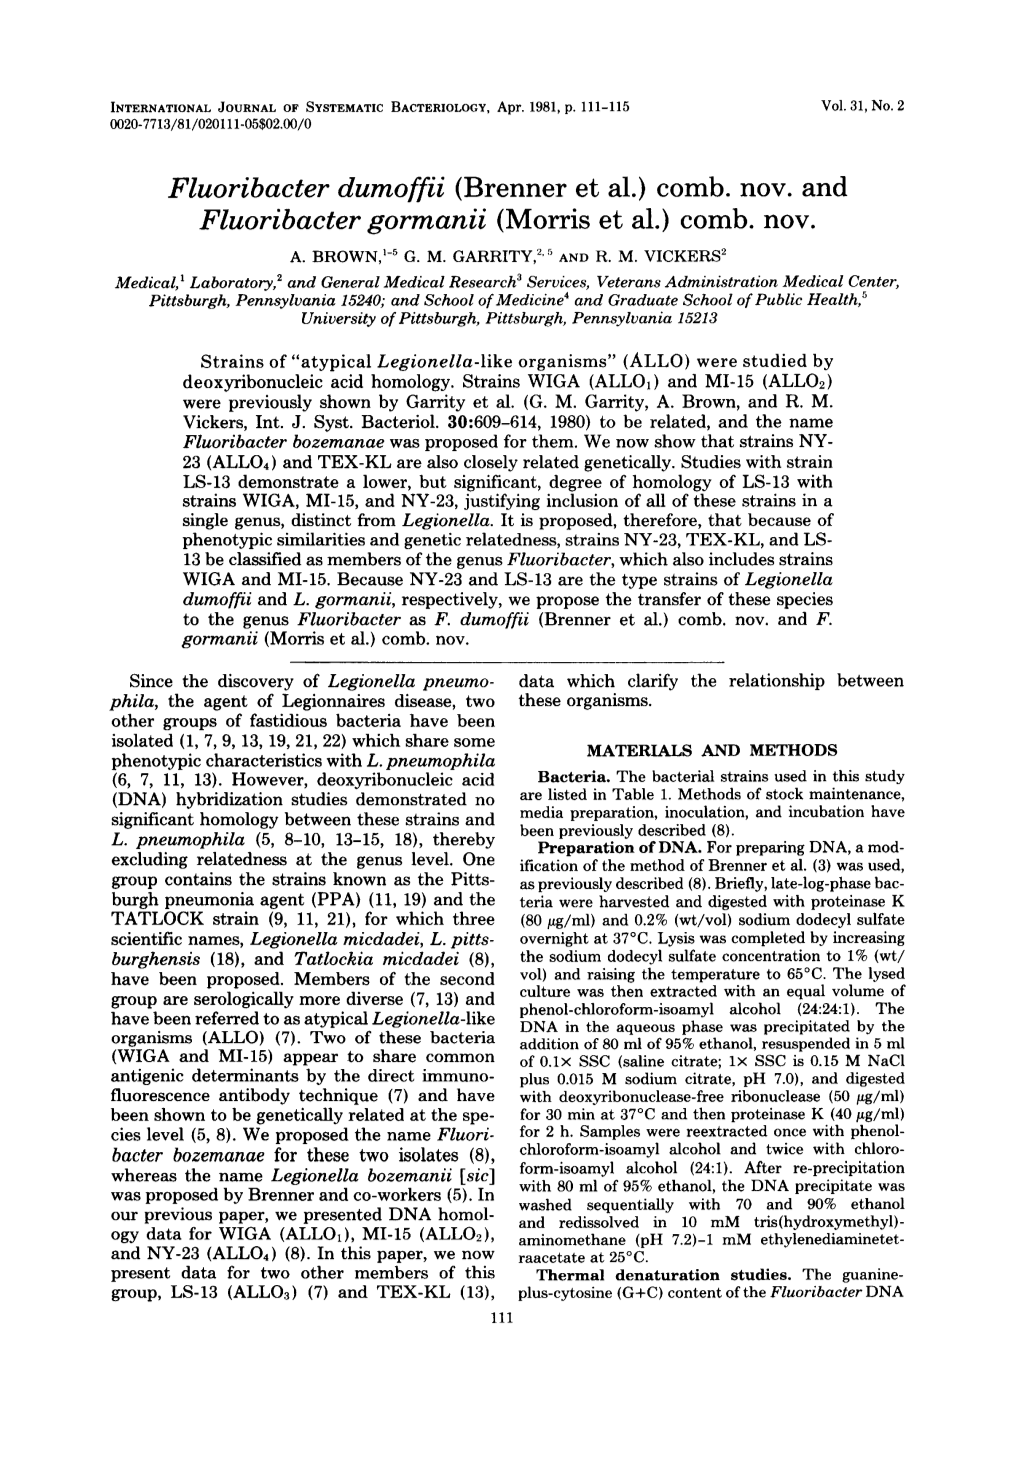 Fluoribacter Dumoffii (Brenner Et Al.) Comb. Nov. and Fluoribacter Gormanii (Morris Et Al.) Comb